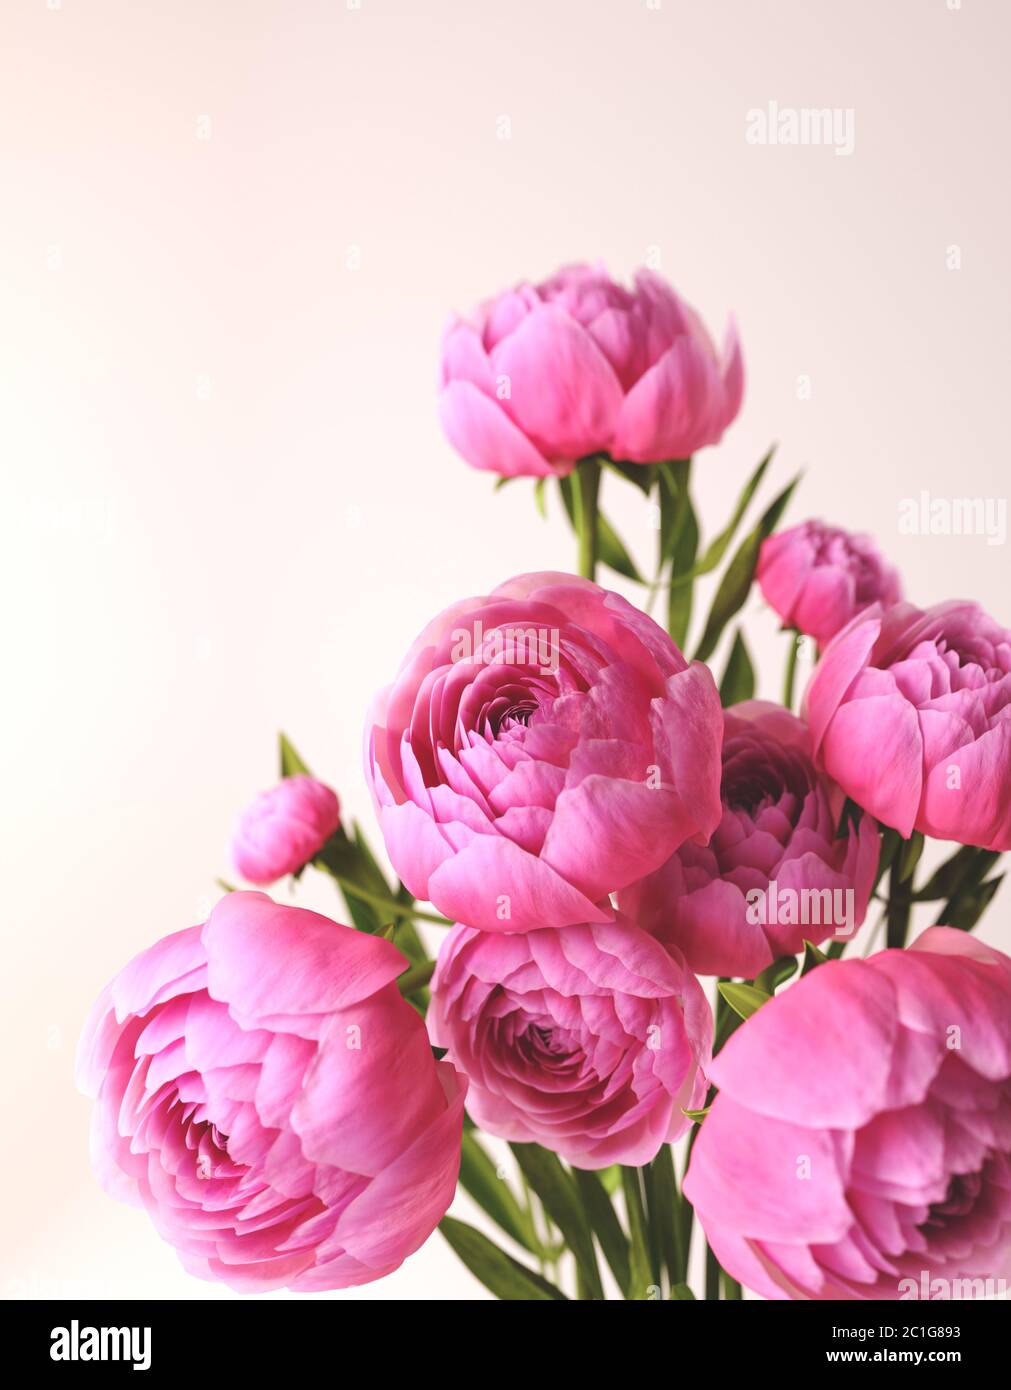 Bouquet de pivoines roses sur fond blanc. Des pivoines fraîches et belles.  illustration 3d d'un bouquet de fleurs roses Photo Stock - Alamy